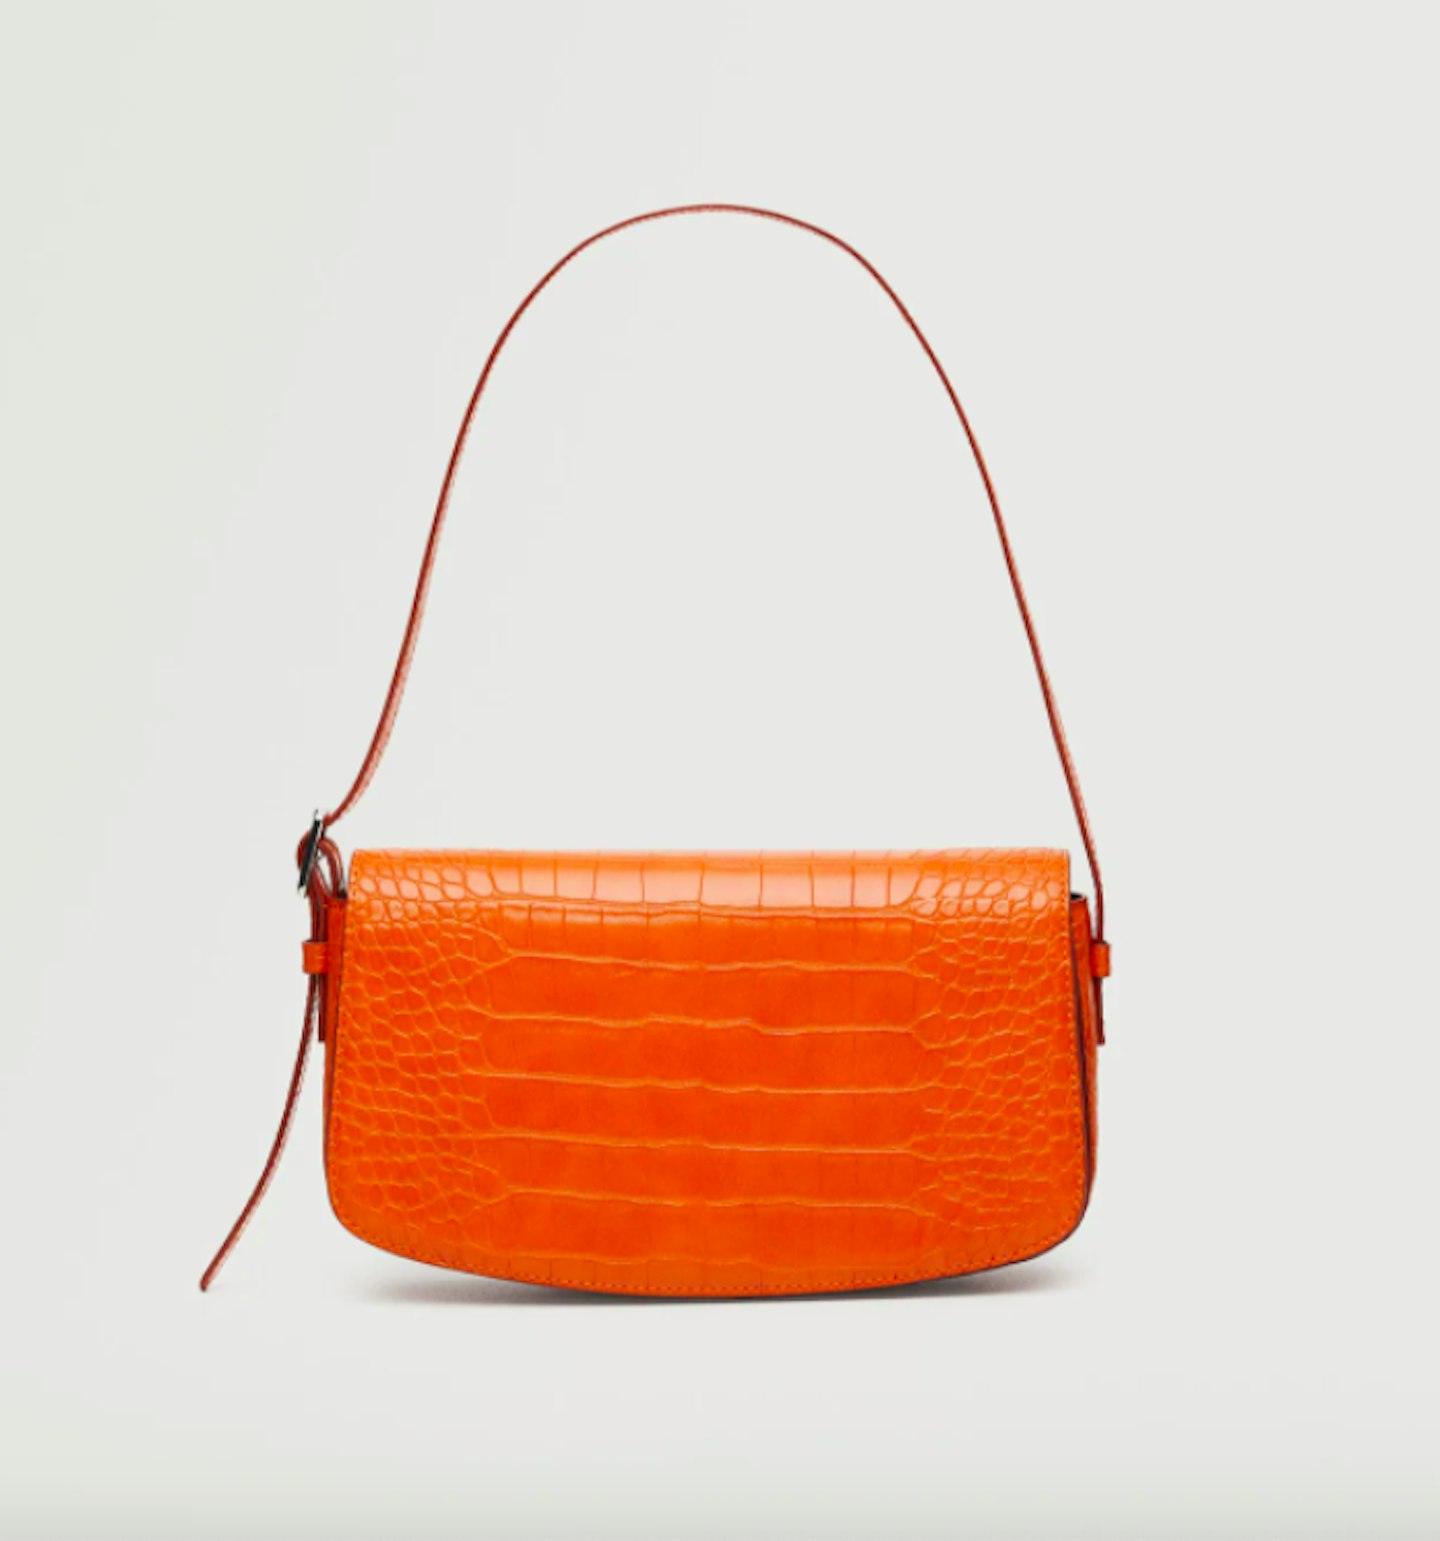 Croc-Effect Baguette Bag, £19.99